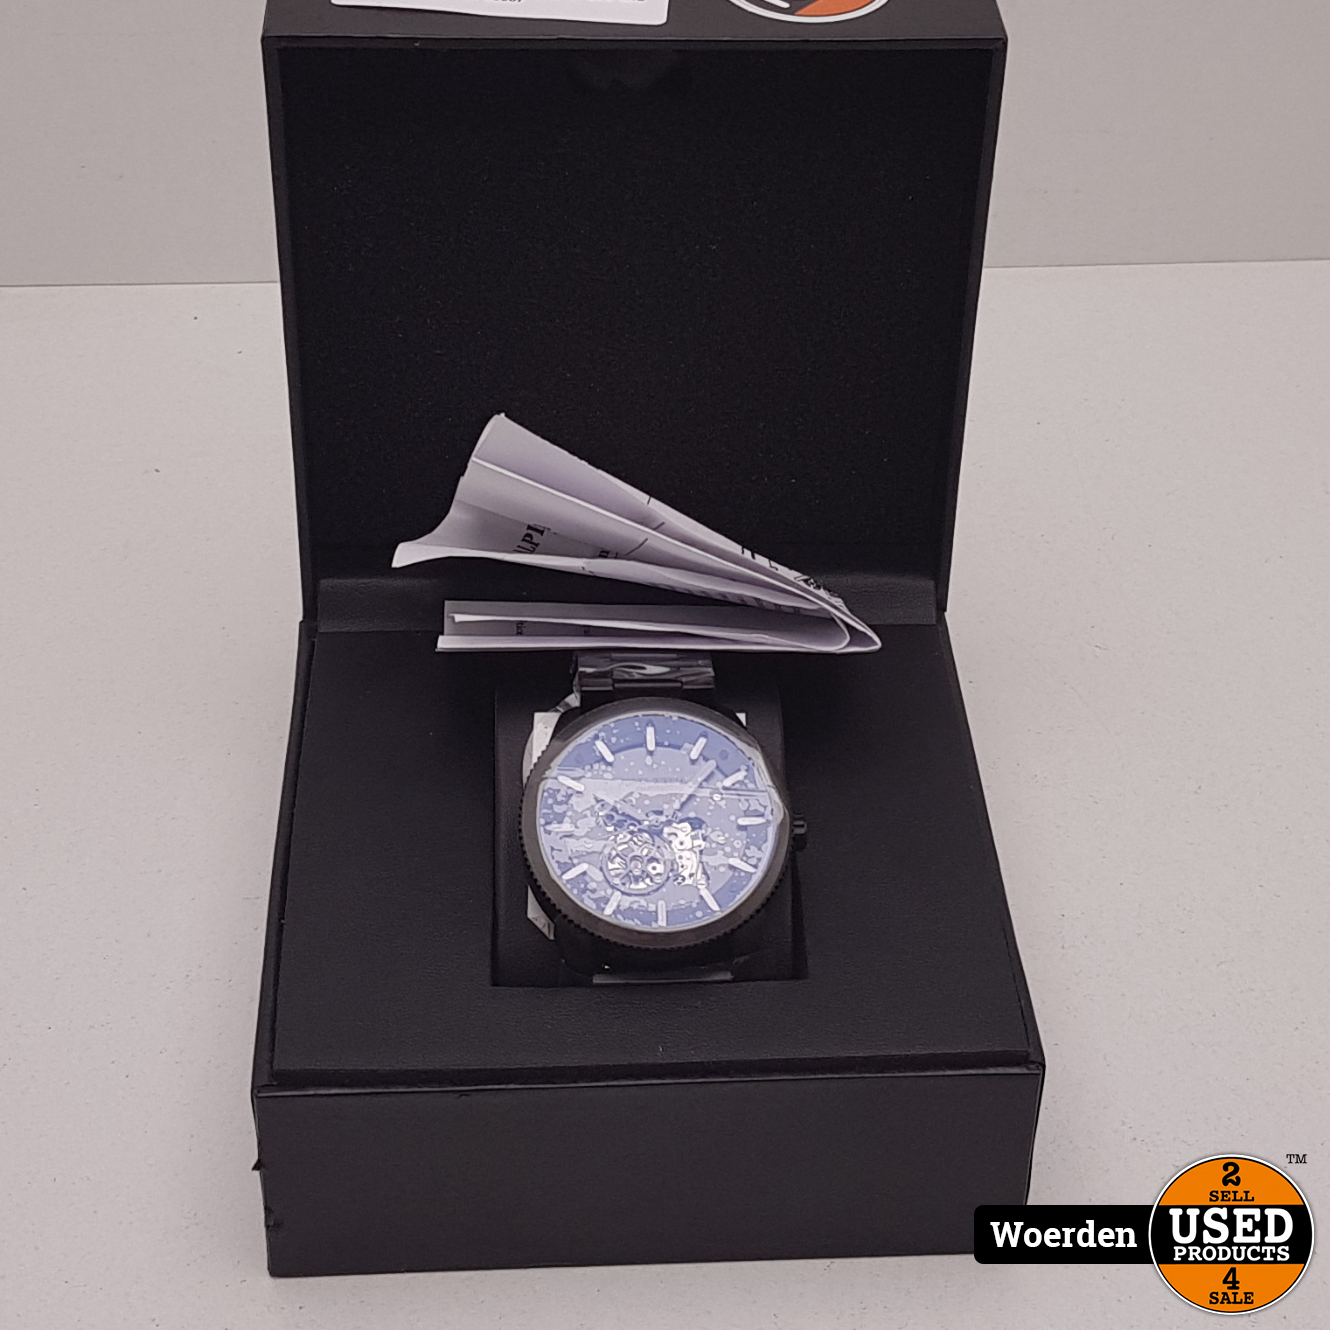 negatief Beoordeling Brouwerij Alpha Sierra 82S0 Horloge NIEUW in Doos met Garantie - Used Products Woerden